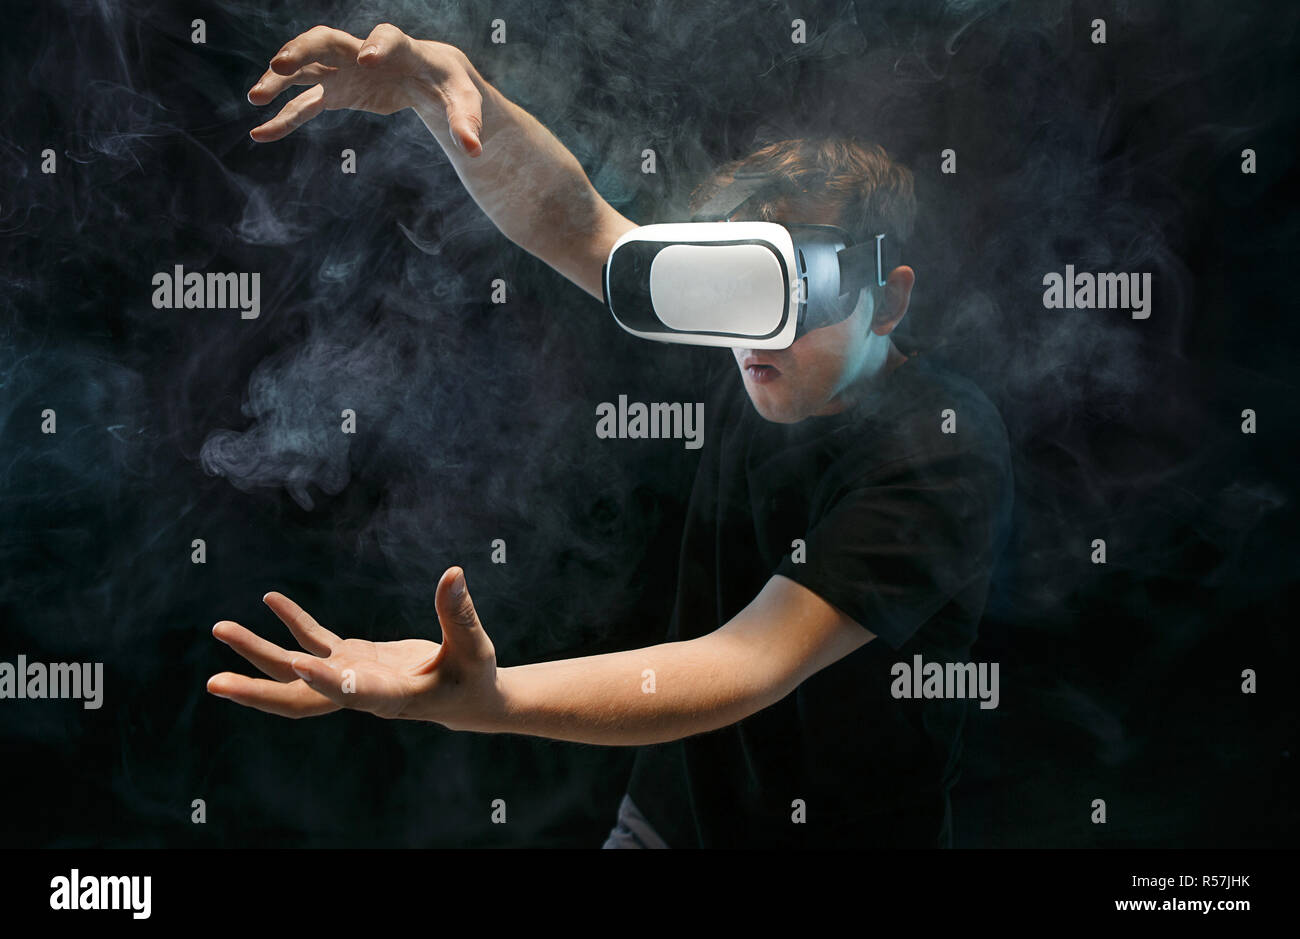 Como funciona realidad virtual